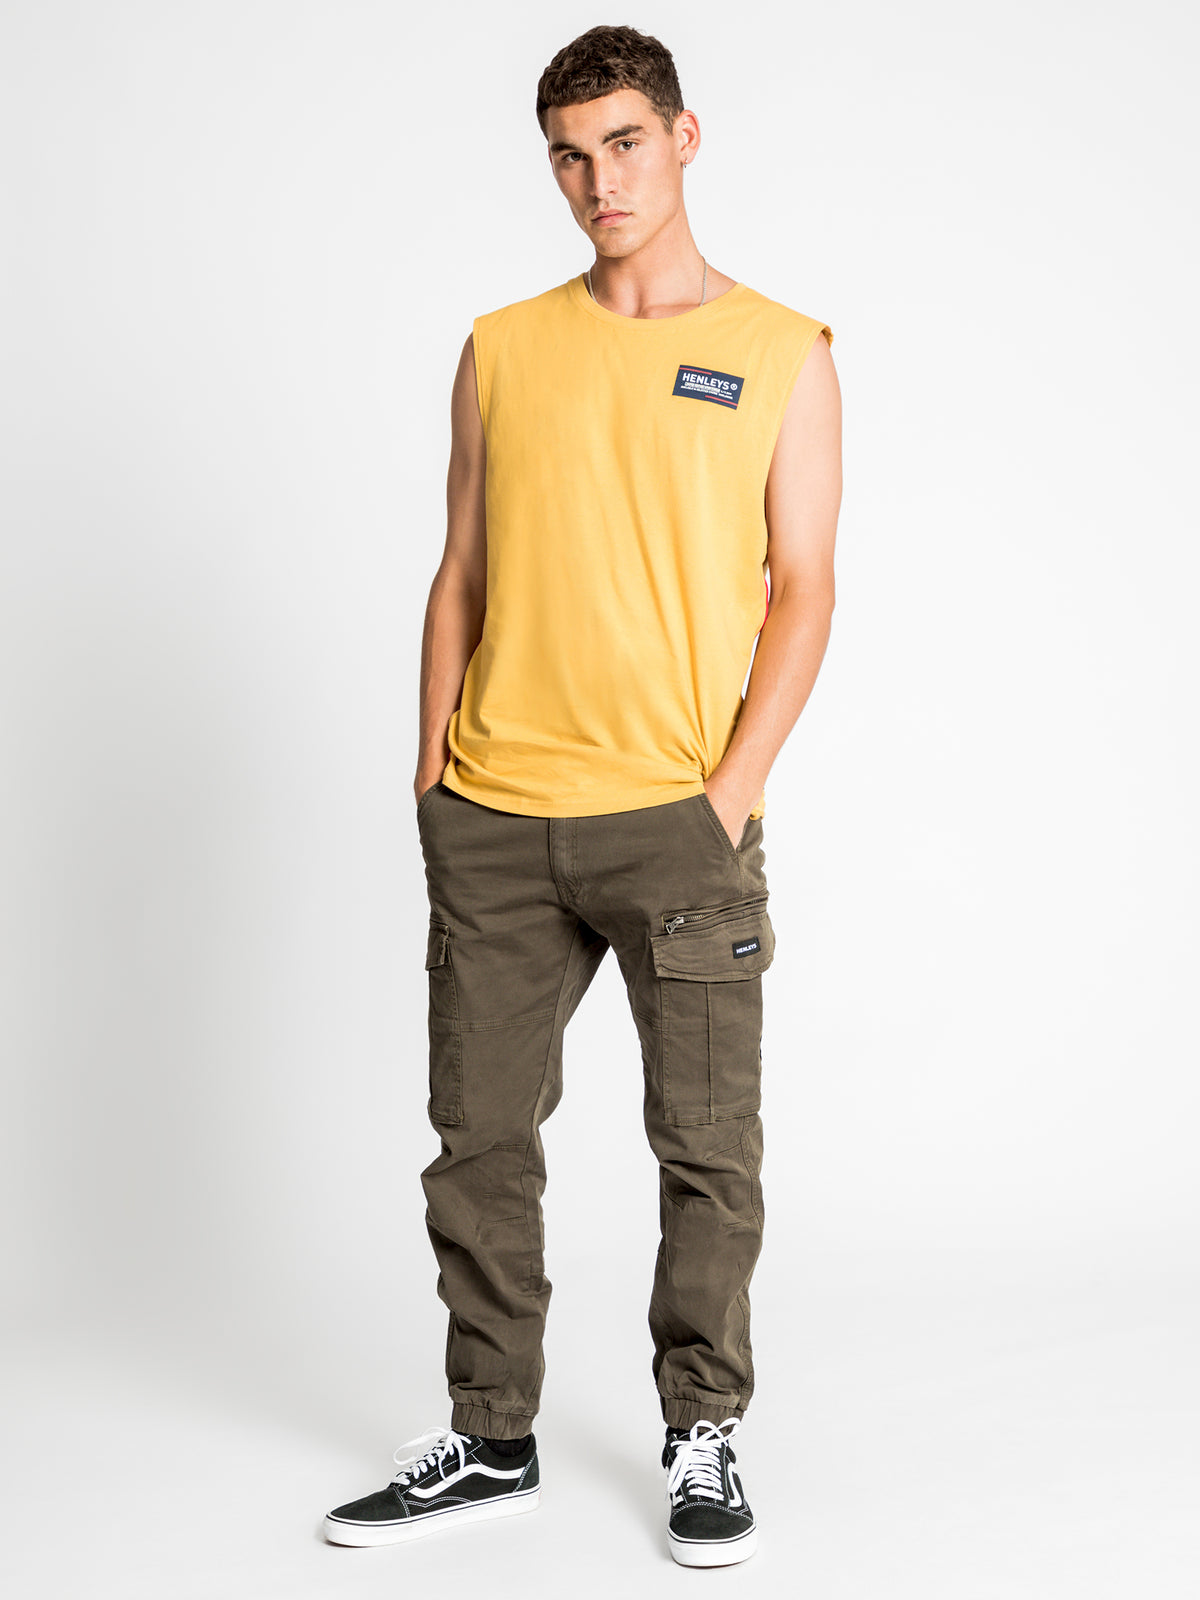 Howard Muscle T-Shirt in Mustard